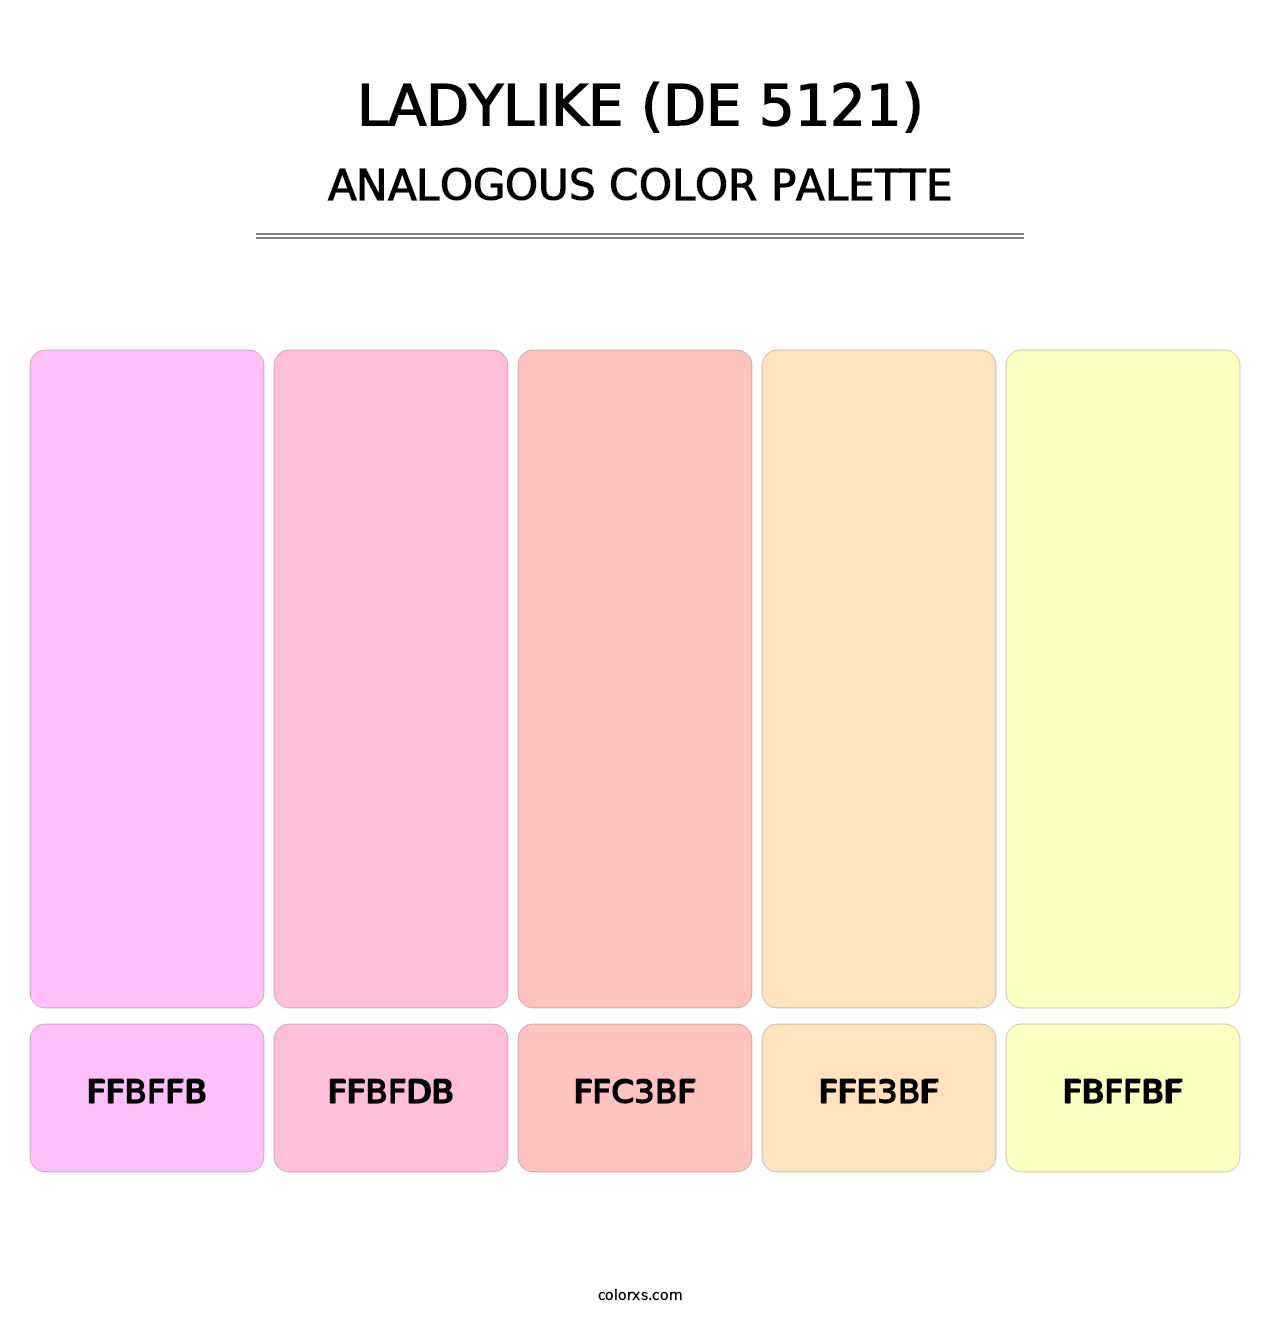 Ladylike (DE 5121) - Analogous Color Palette